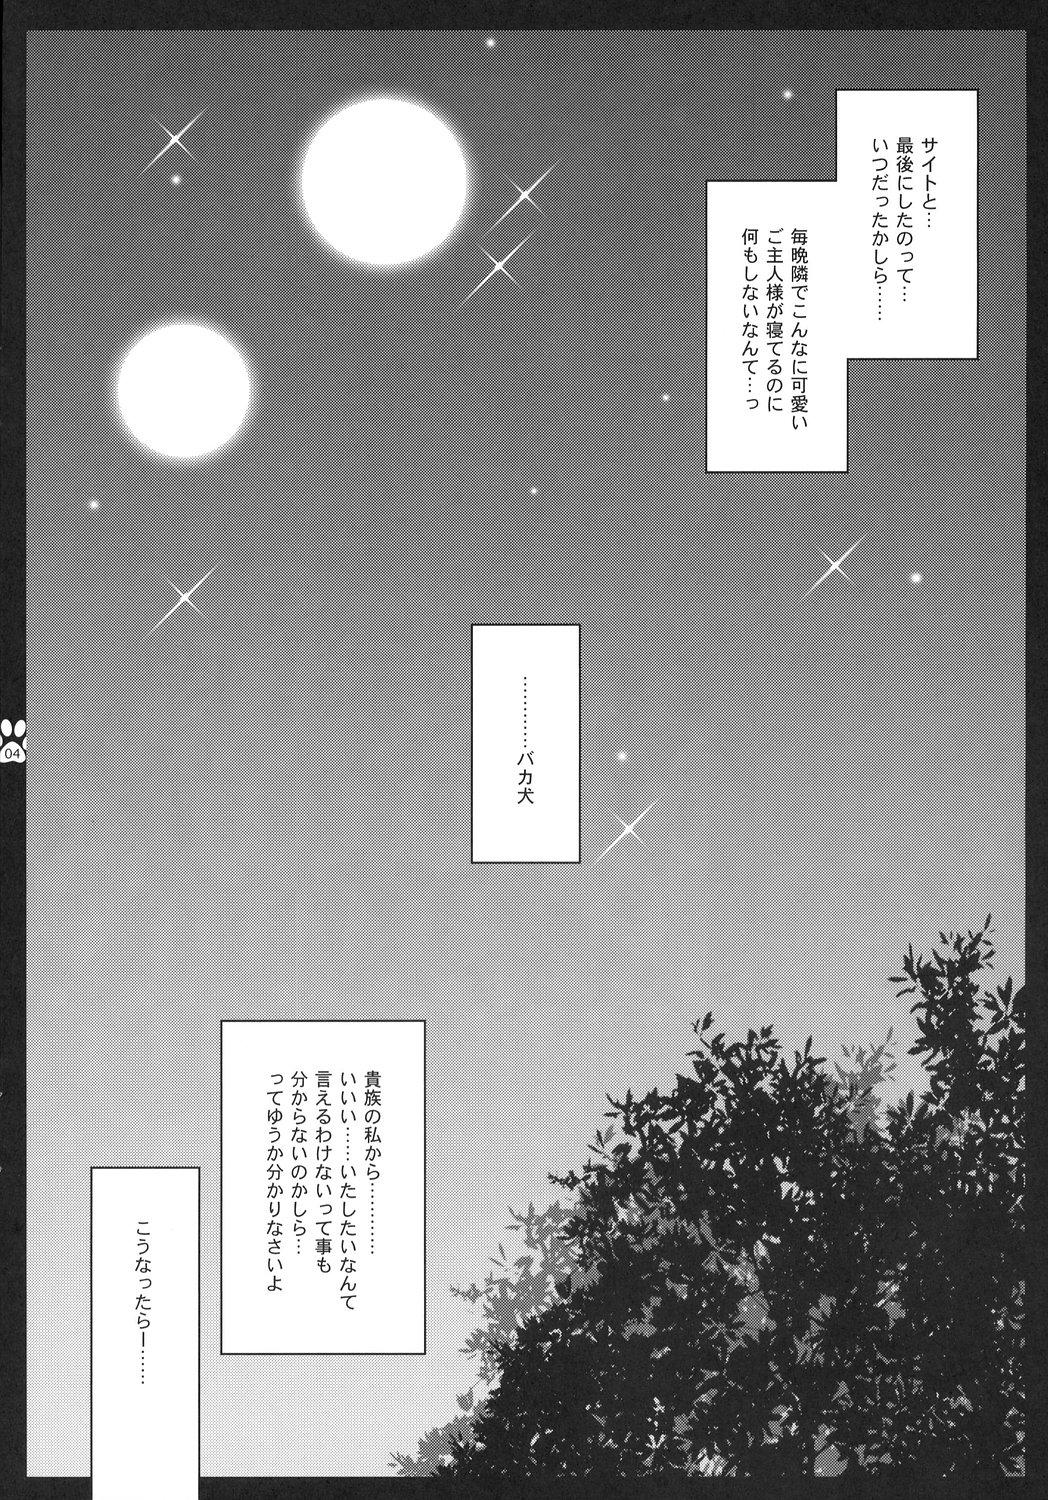 Staxxx Sunao Sukitteii Nasai! - Zero no tsukaima Doctor - Page 3